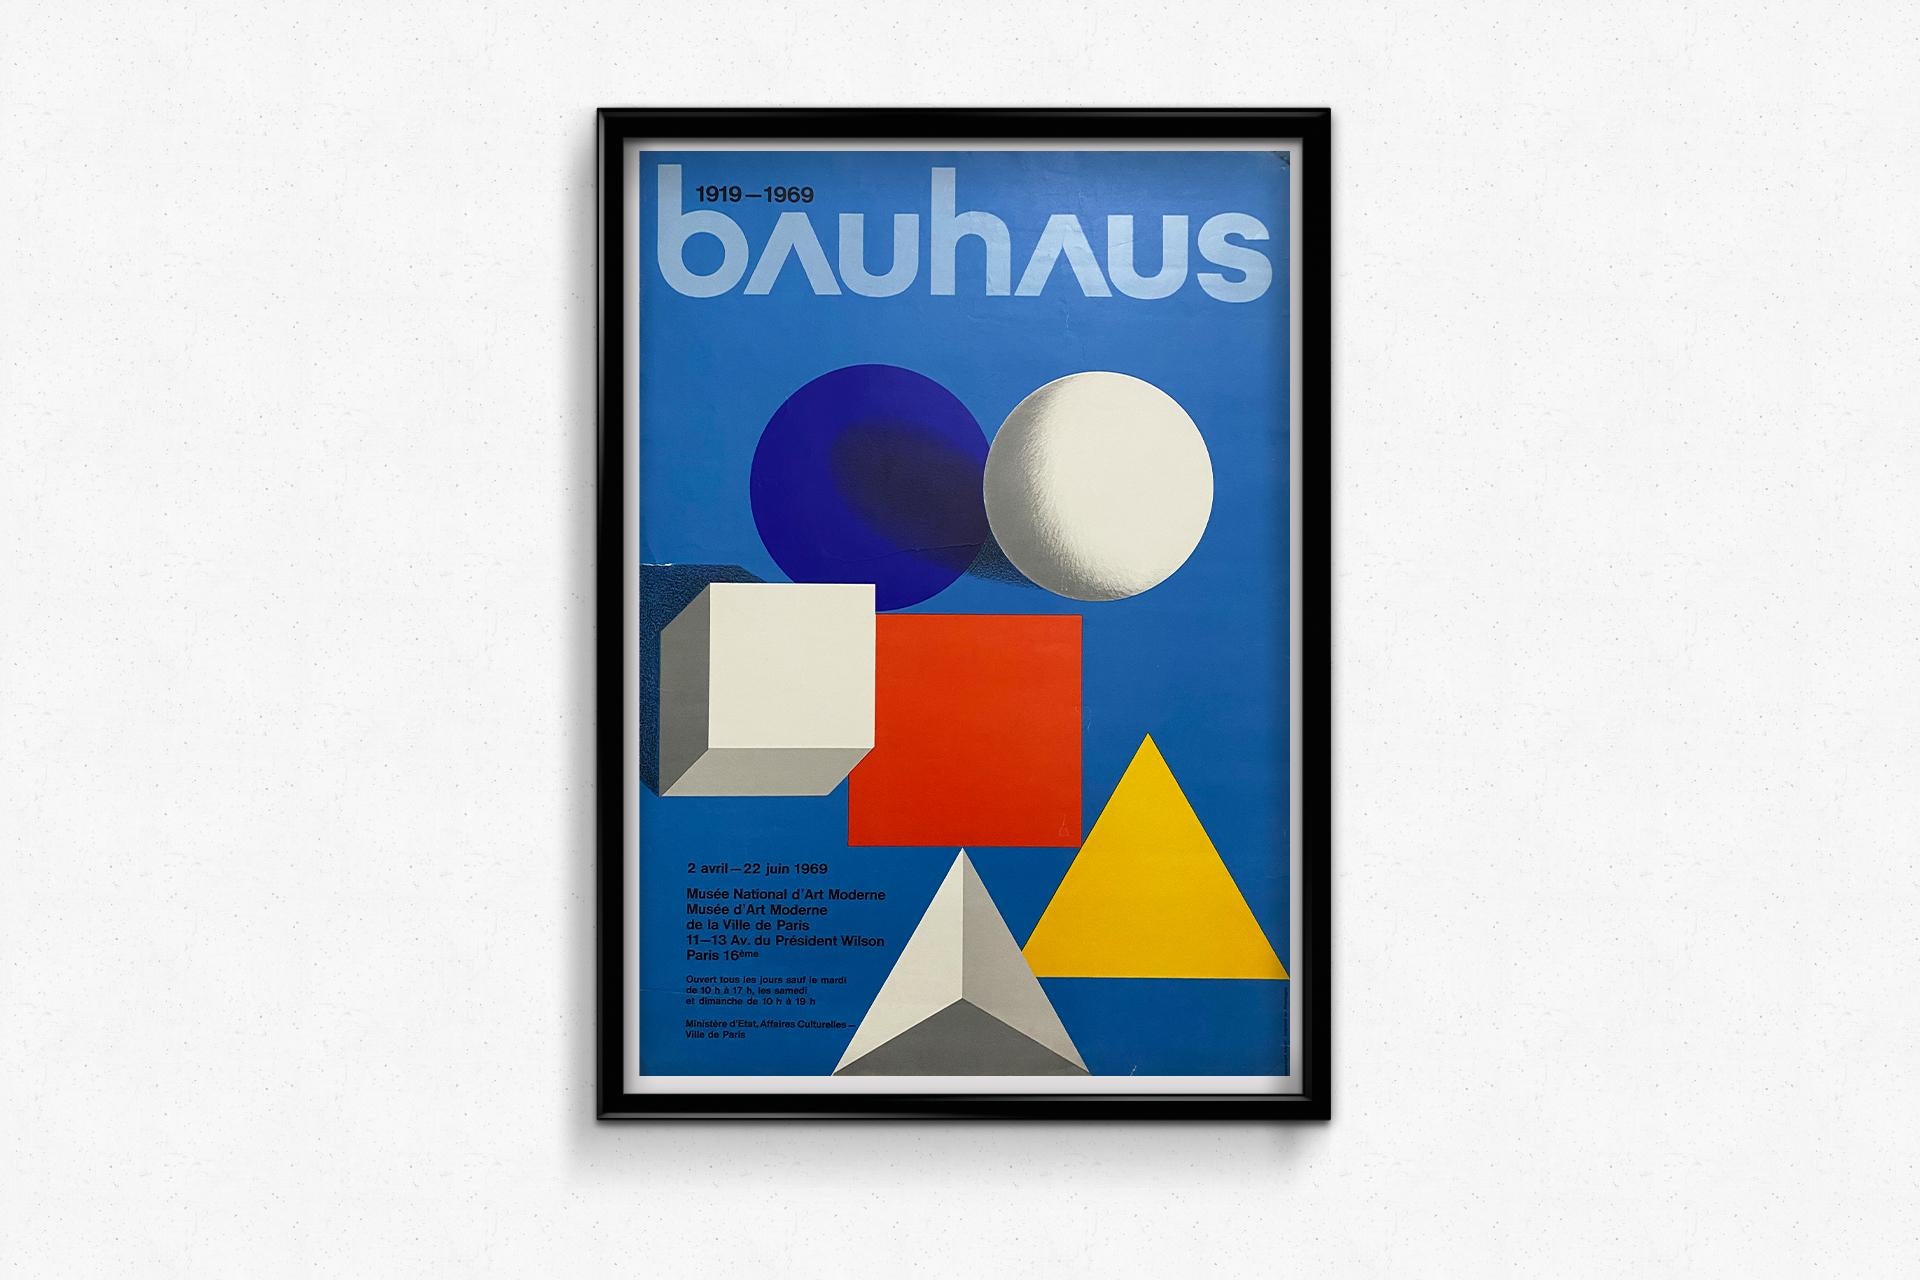 Une belle affiche réalisée pour le 50e anniversaire de la création du Bauhaus au Musée national d'art moderne, par Herbert Bayer 🇺🇸 (1900-1985), designer, peintre, architecte mais aussi typographe et photographe américain d'origine